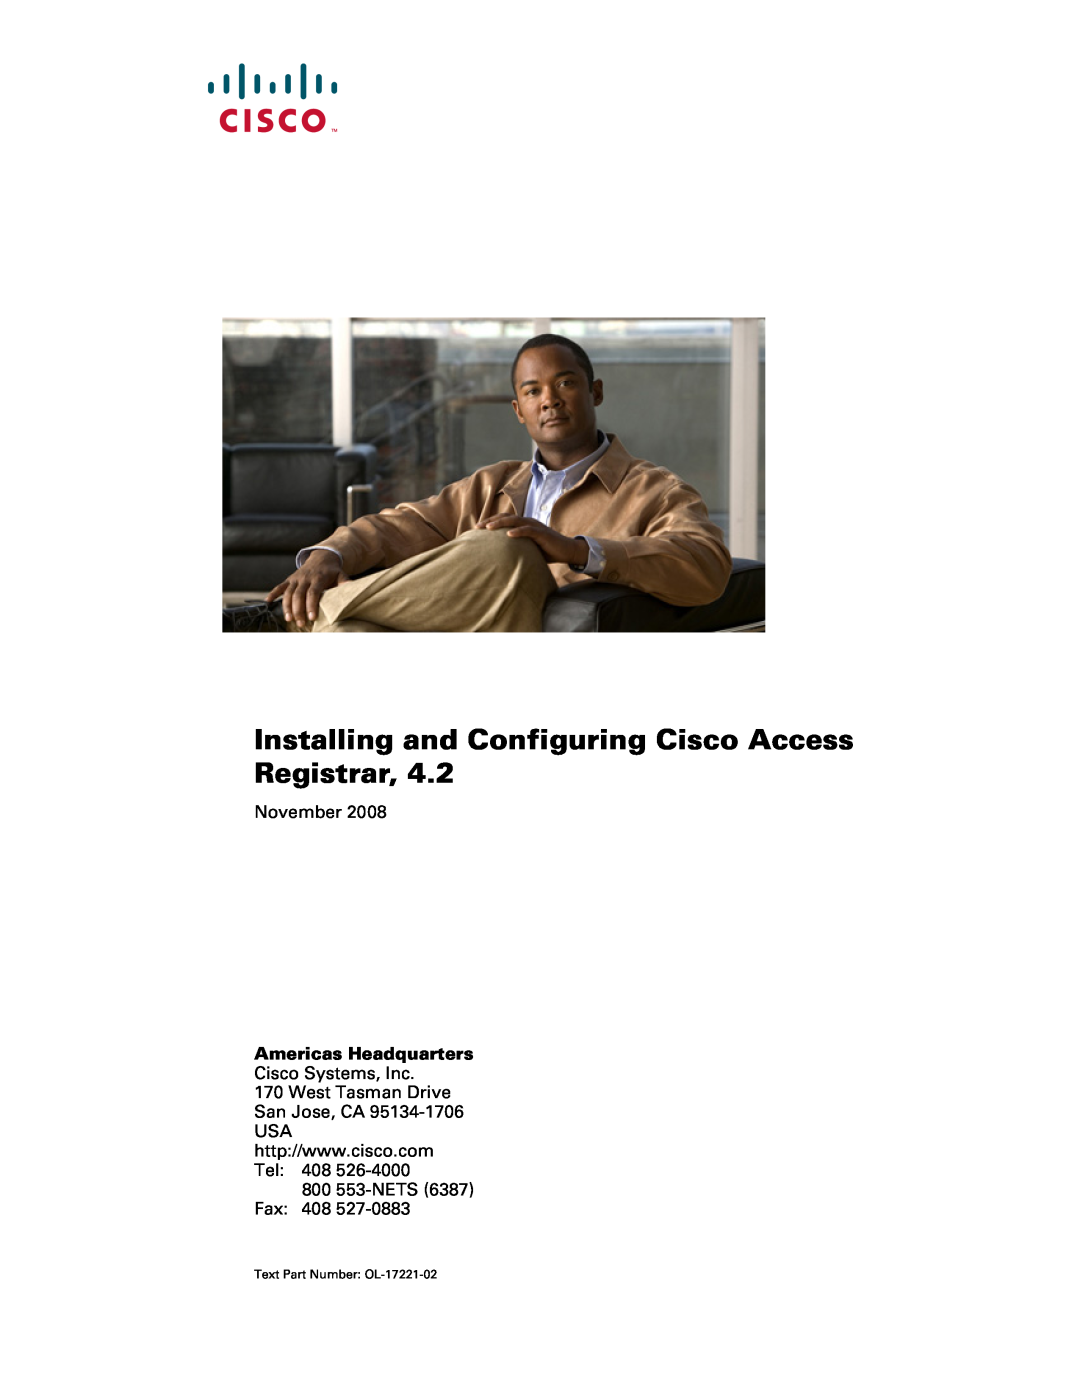 Cisco Systems 4.2 manual Americas Headquarters, Installing and Configuring Cisco Access Registrar, November 